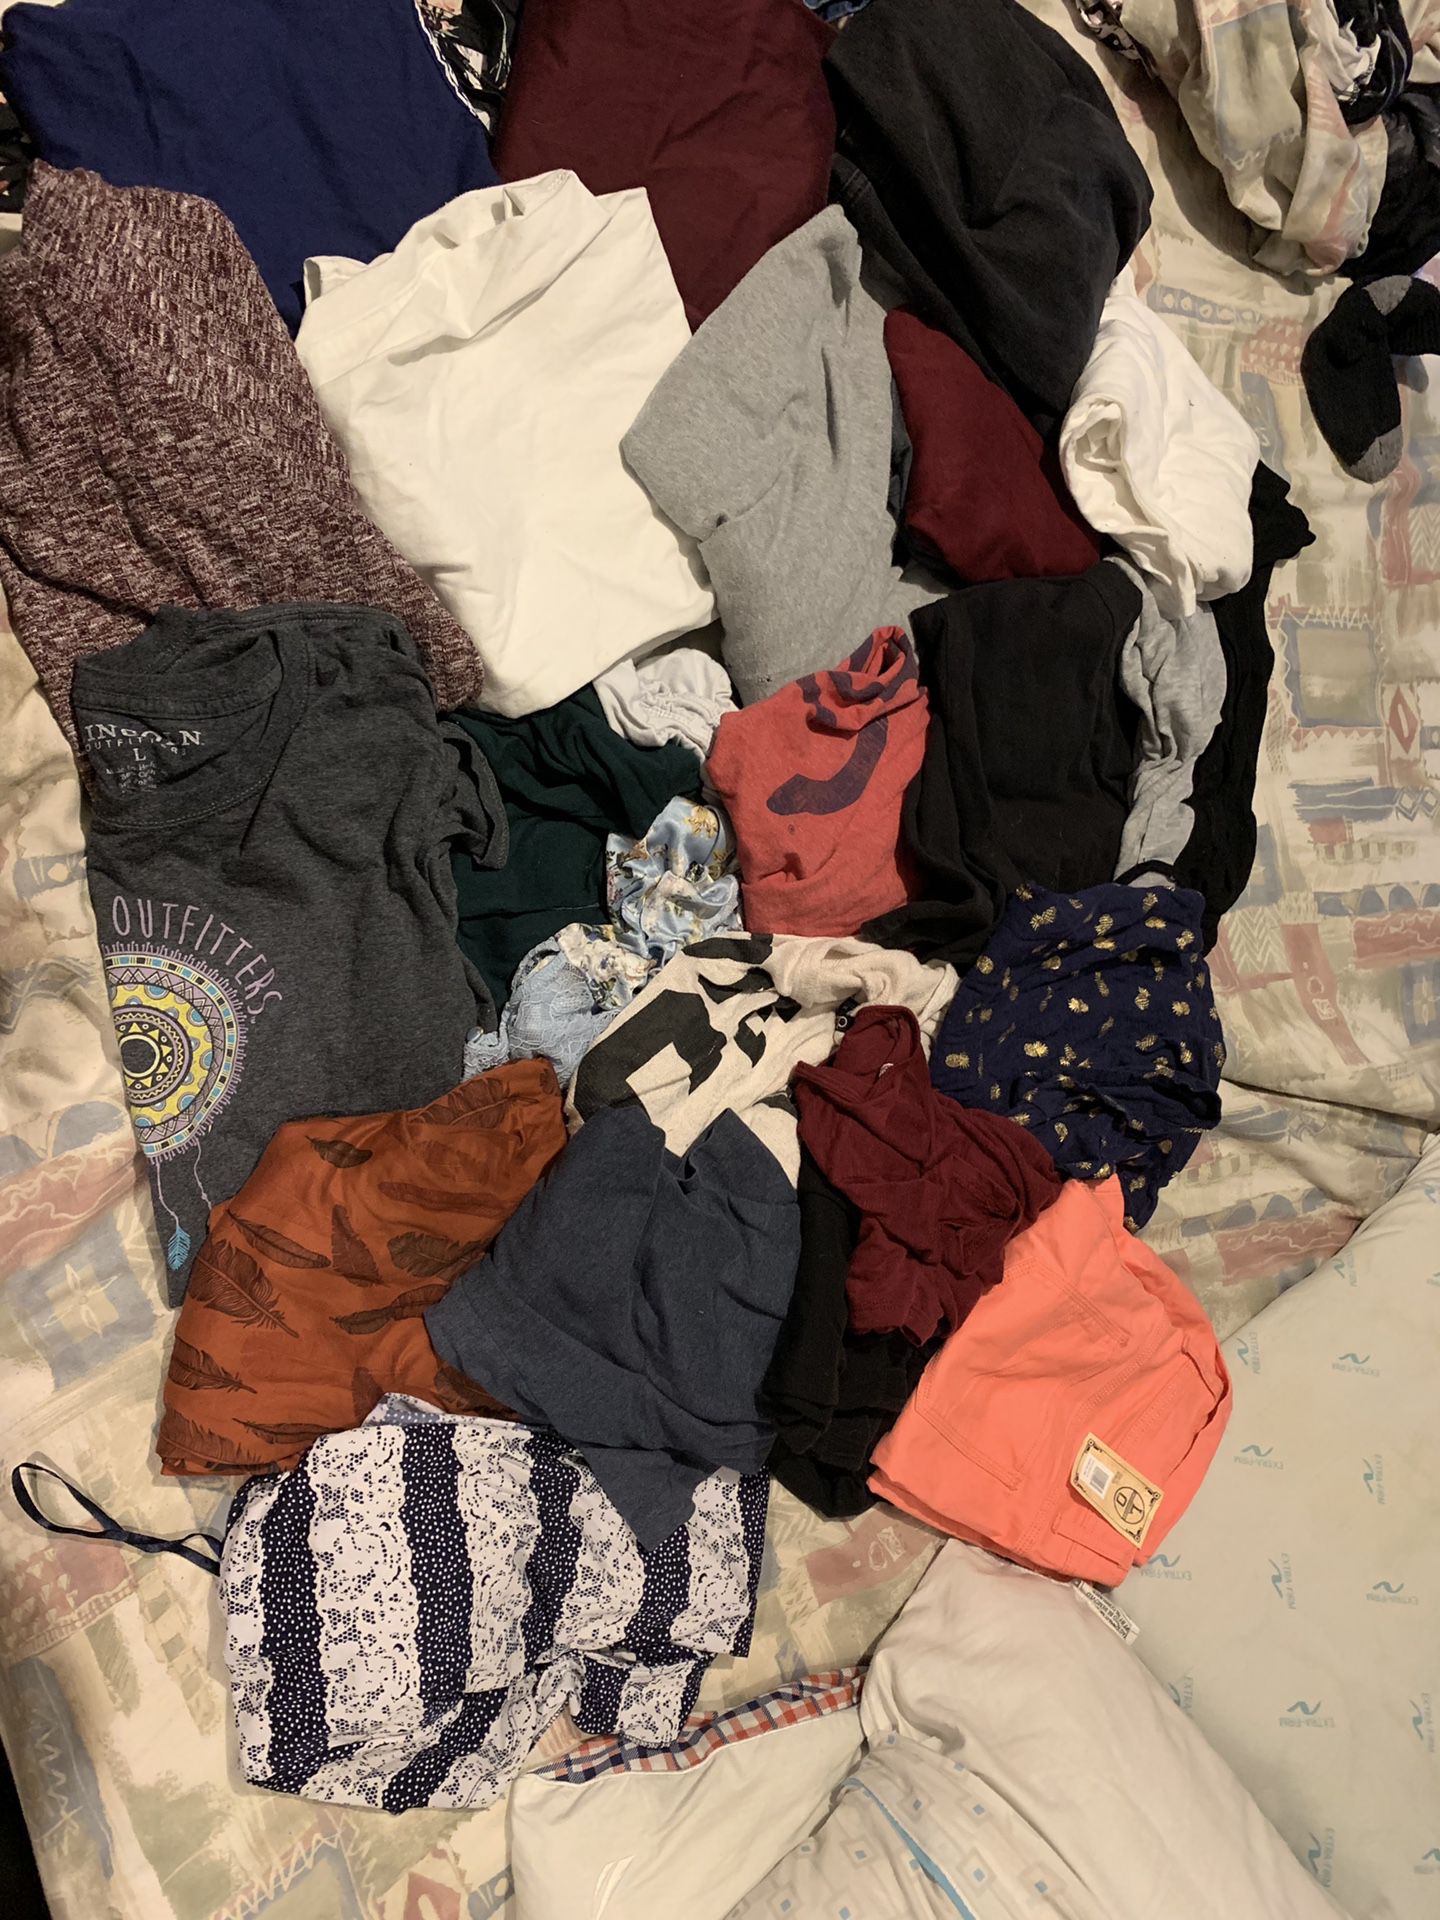 Massive clothes bundle